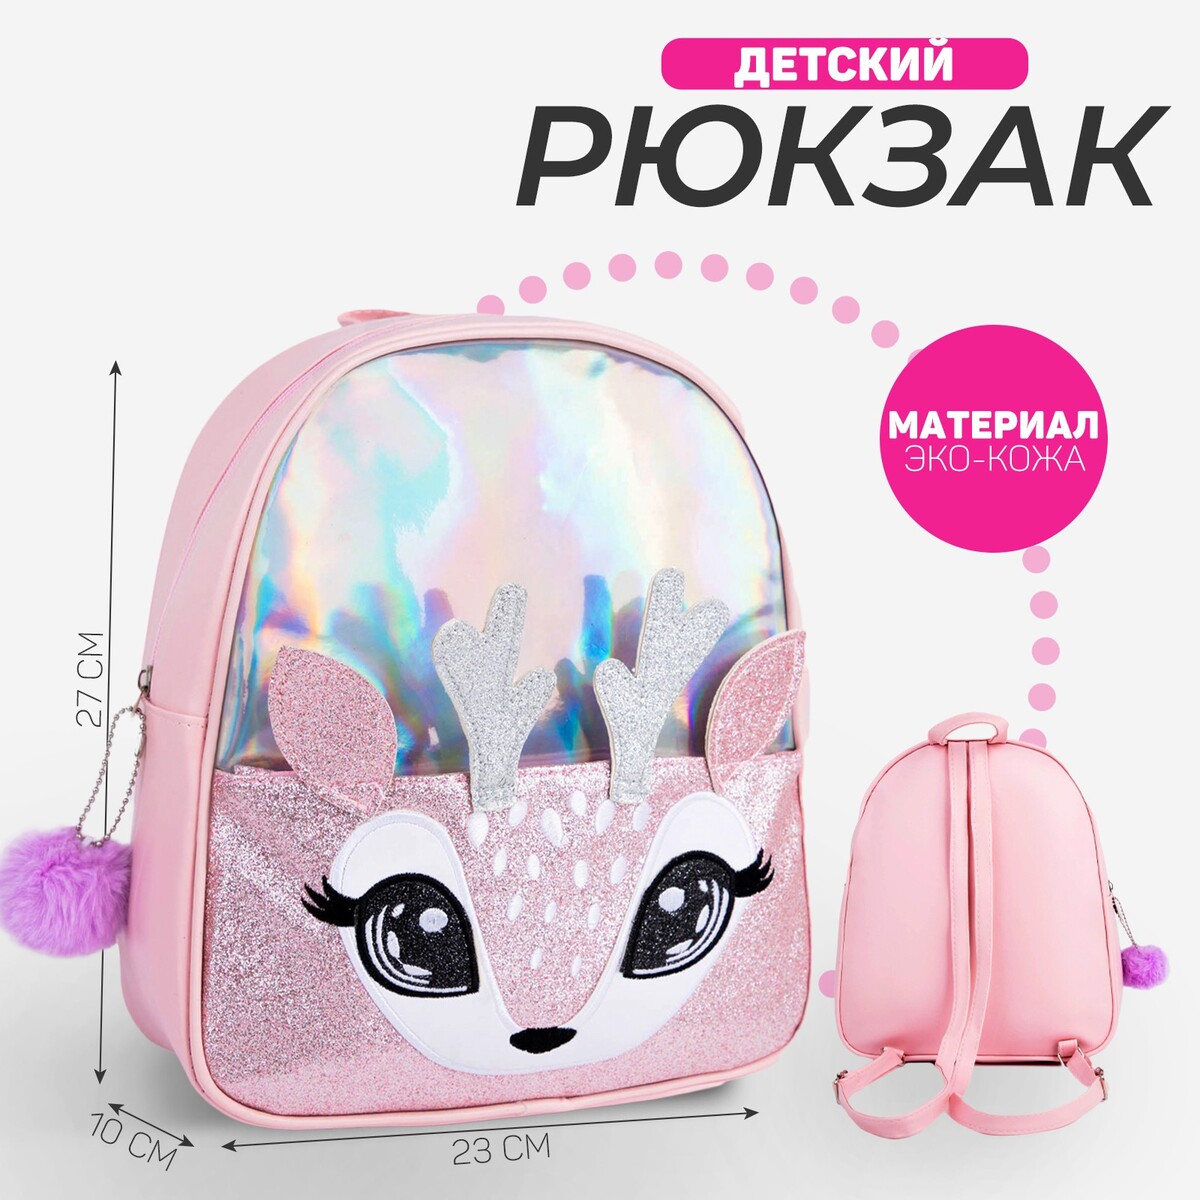 Рюкзак детский с блестящим карманом рюкзак с карманом 22 см х 10 см х 30 см